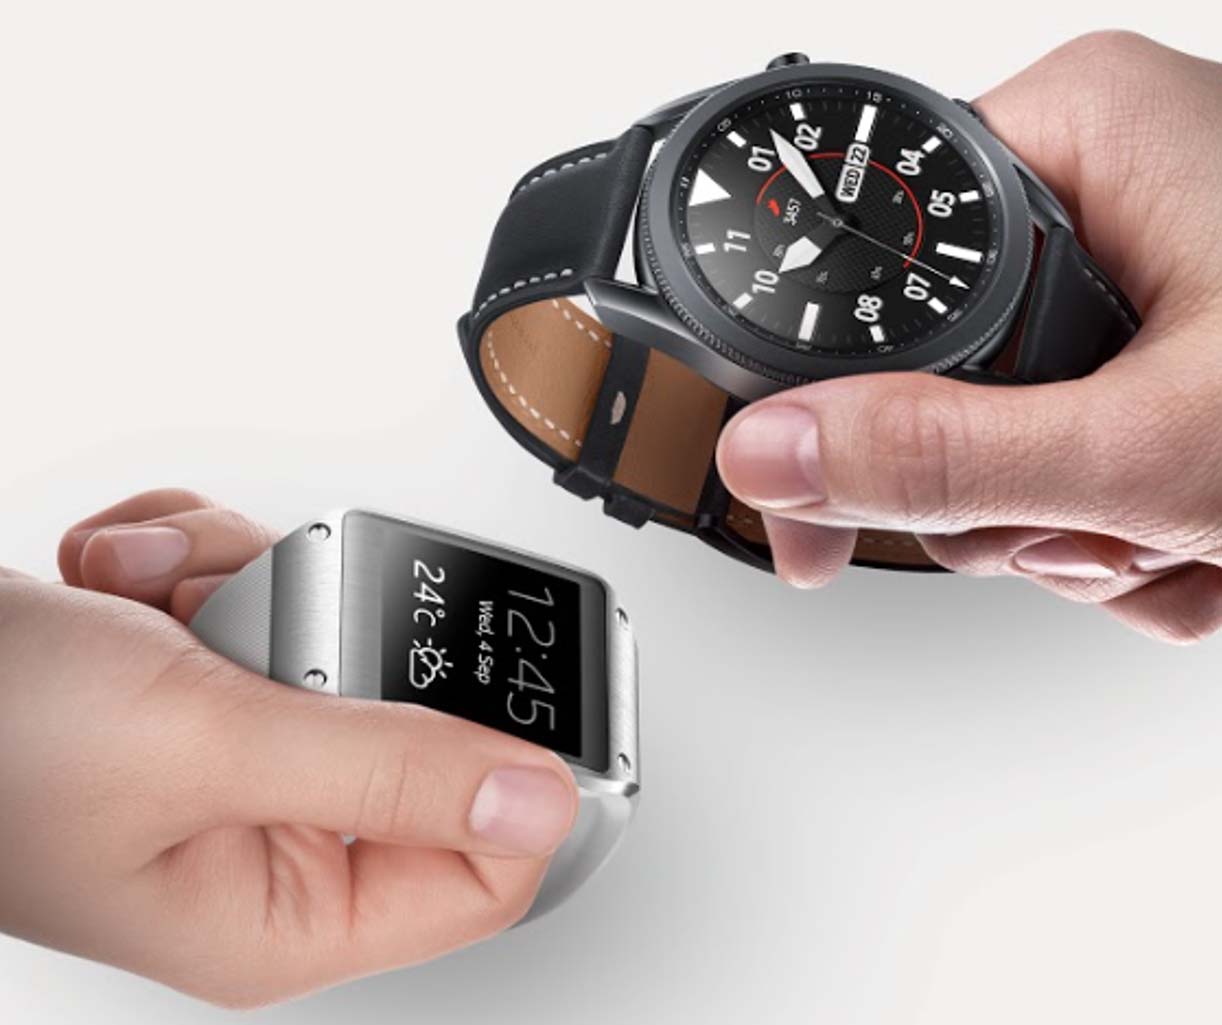 Chương trình thu cũ đổi mới dành cho đồng hồ thông minh Samsung Galaxy Watch